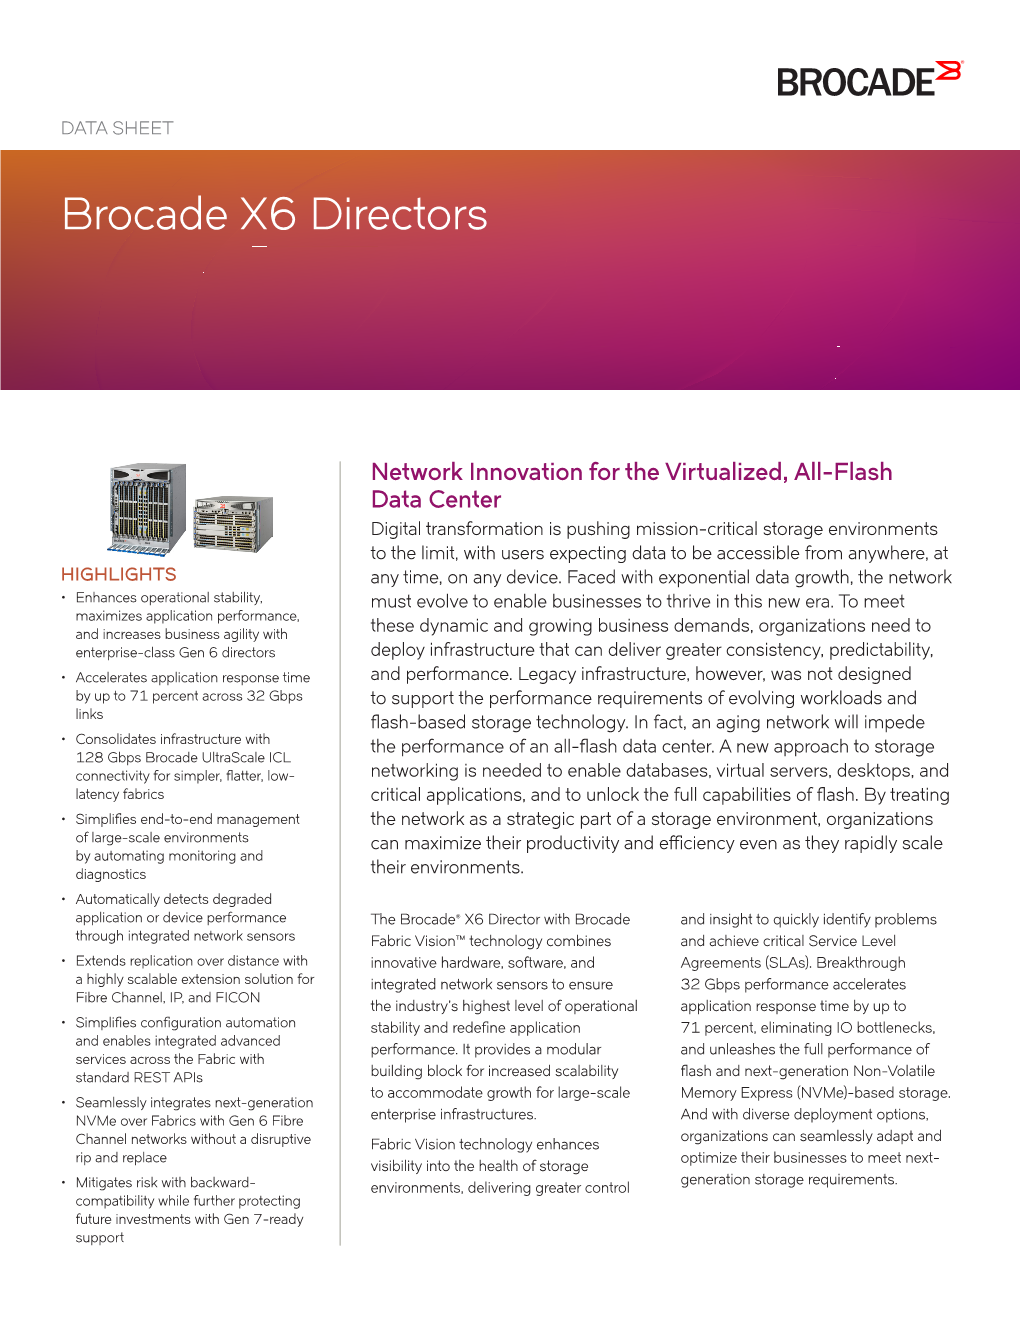 Brocade X6 Directors Datasheet